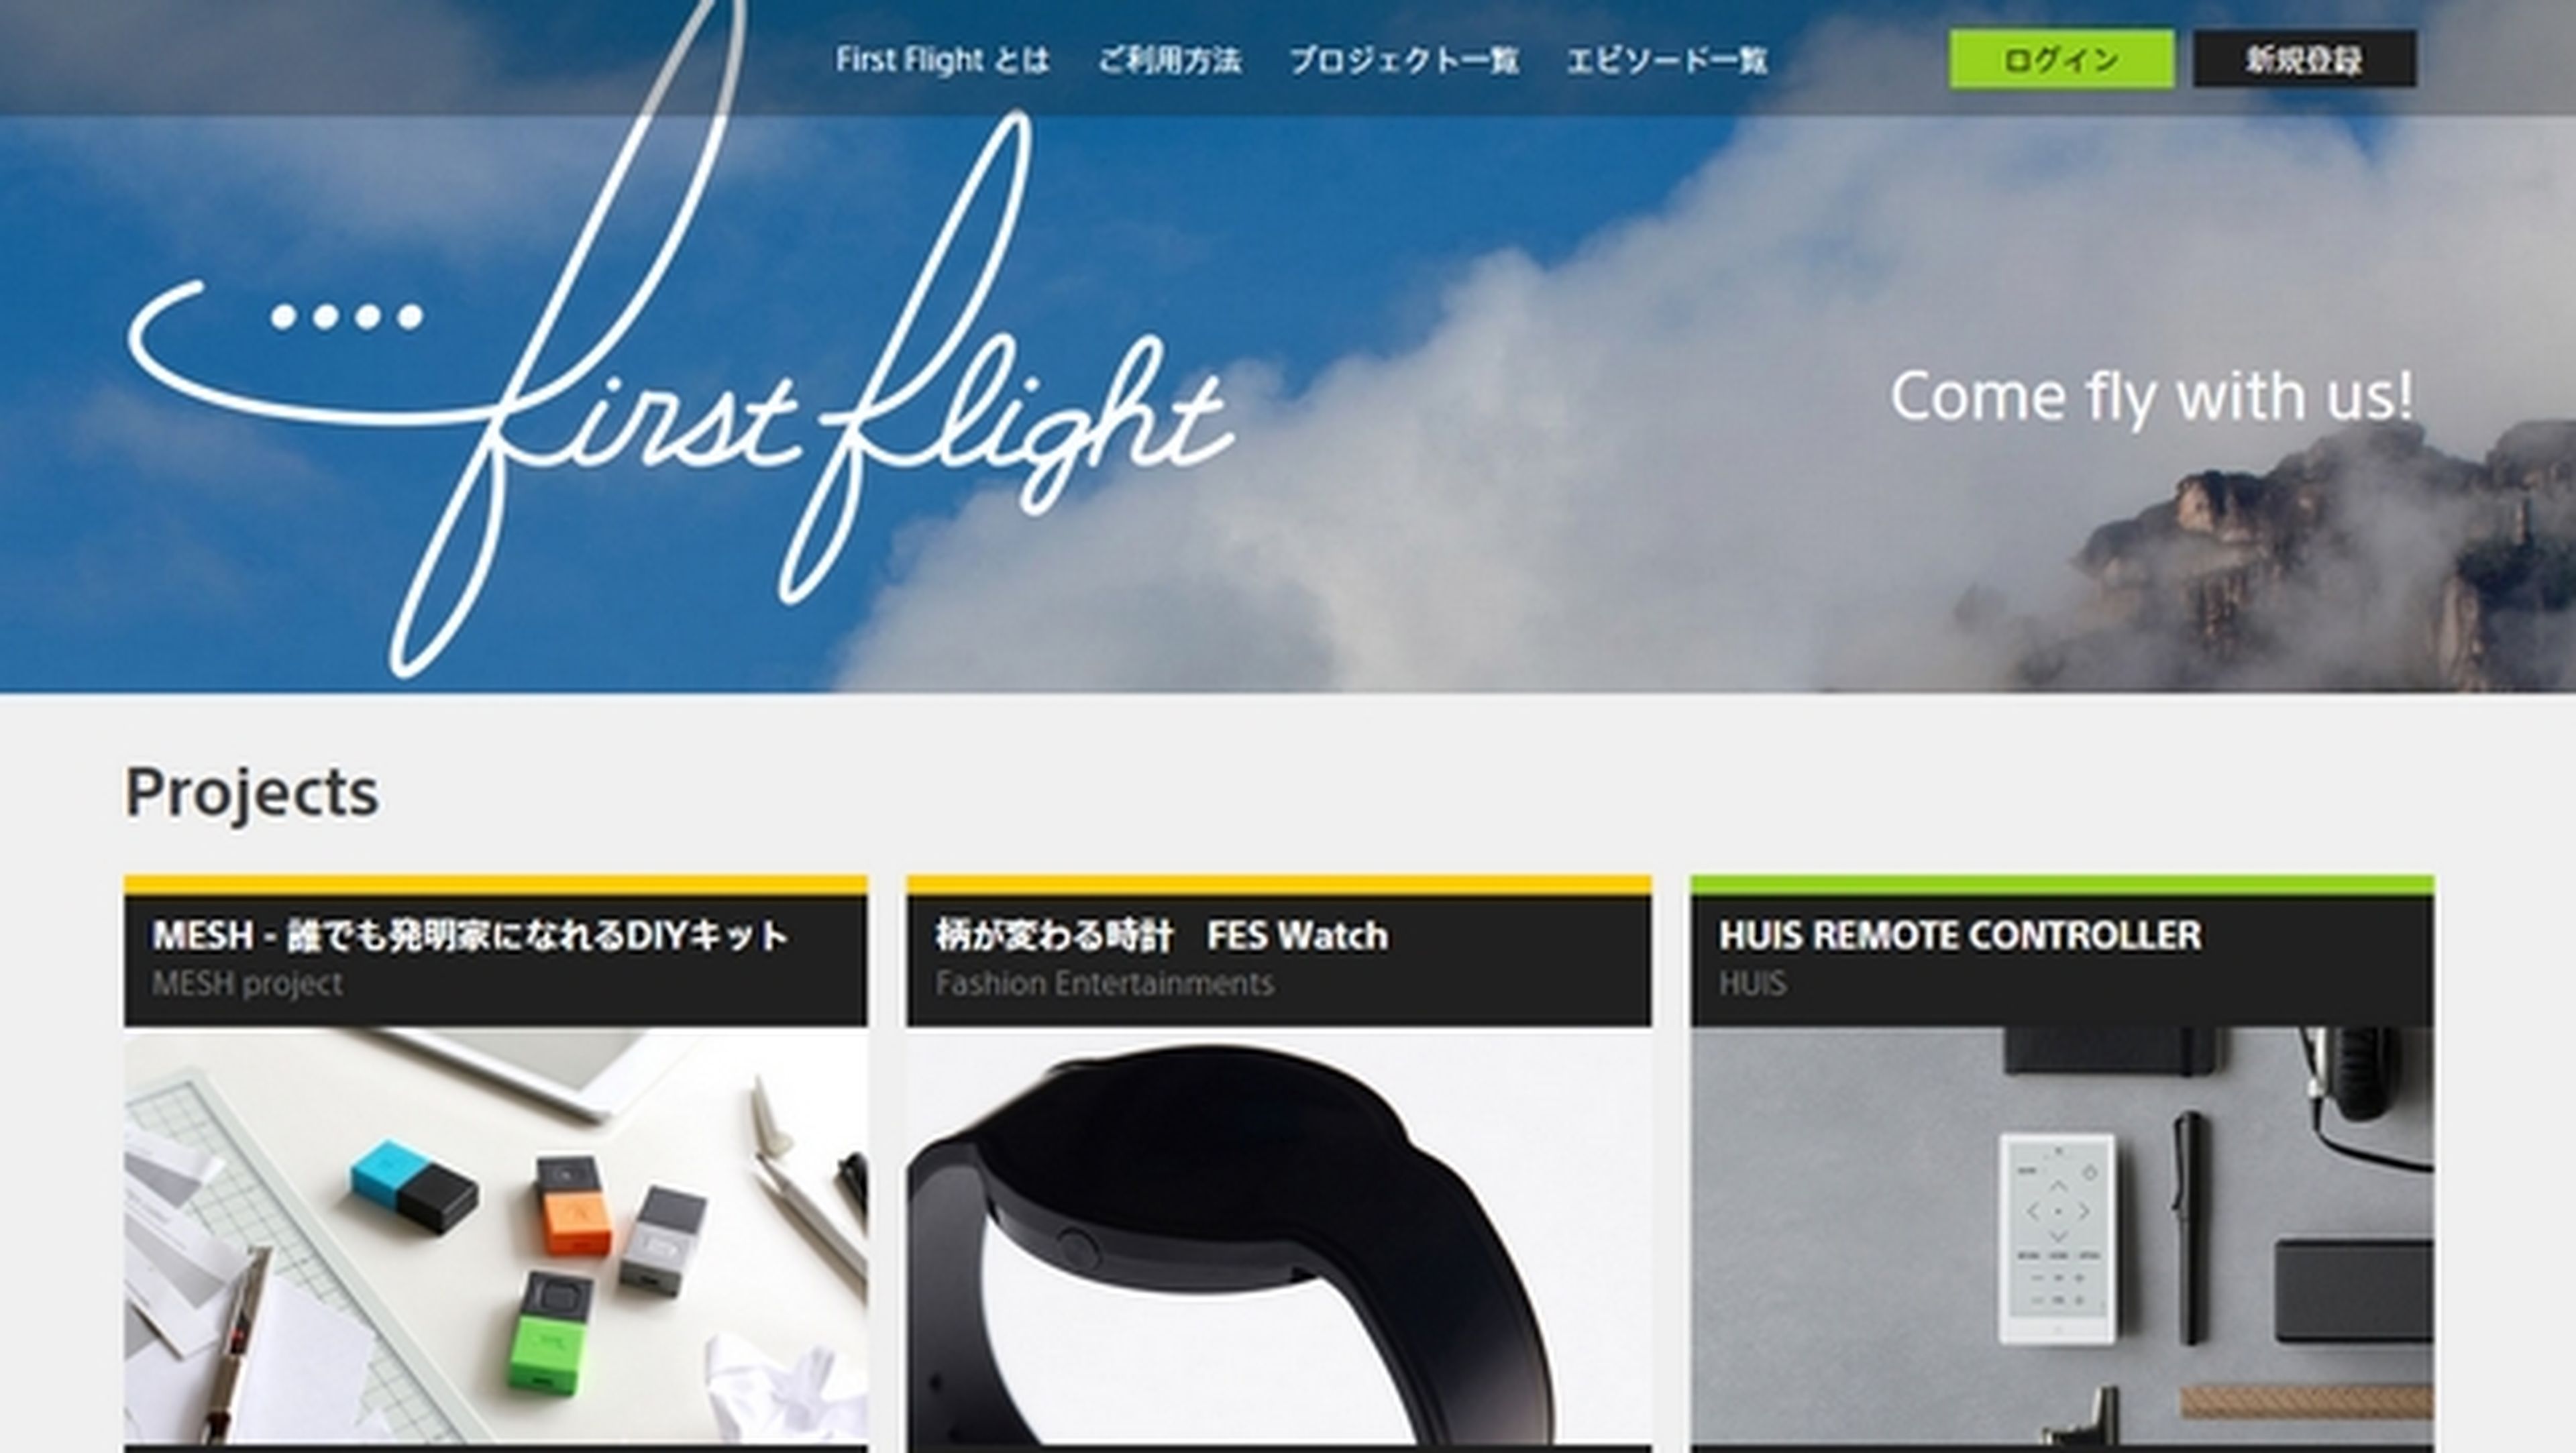 First Flight, Sony estrena su web de crowdfunding para sus empleados.